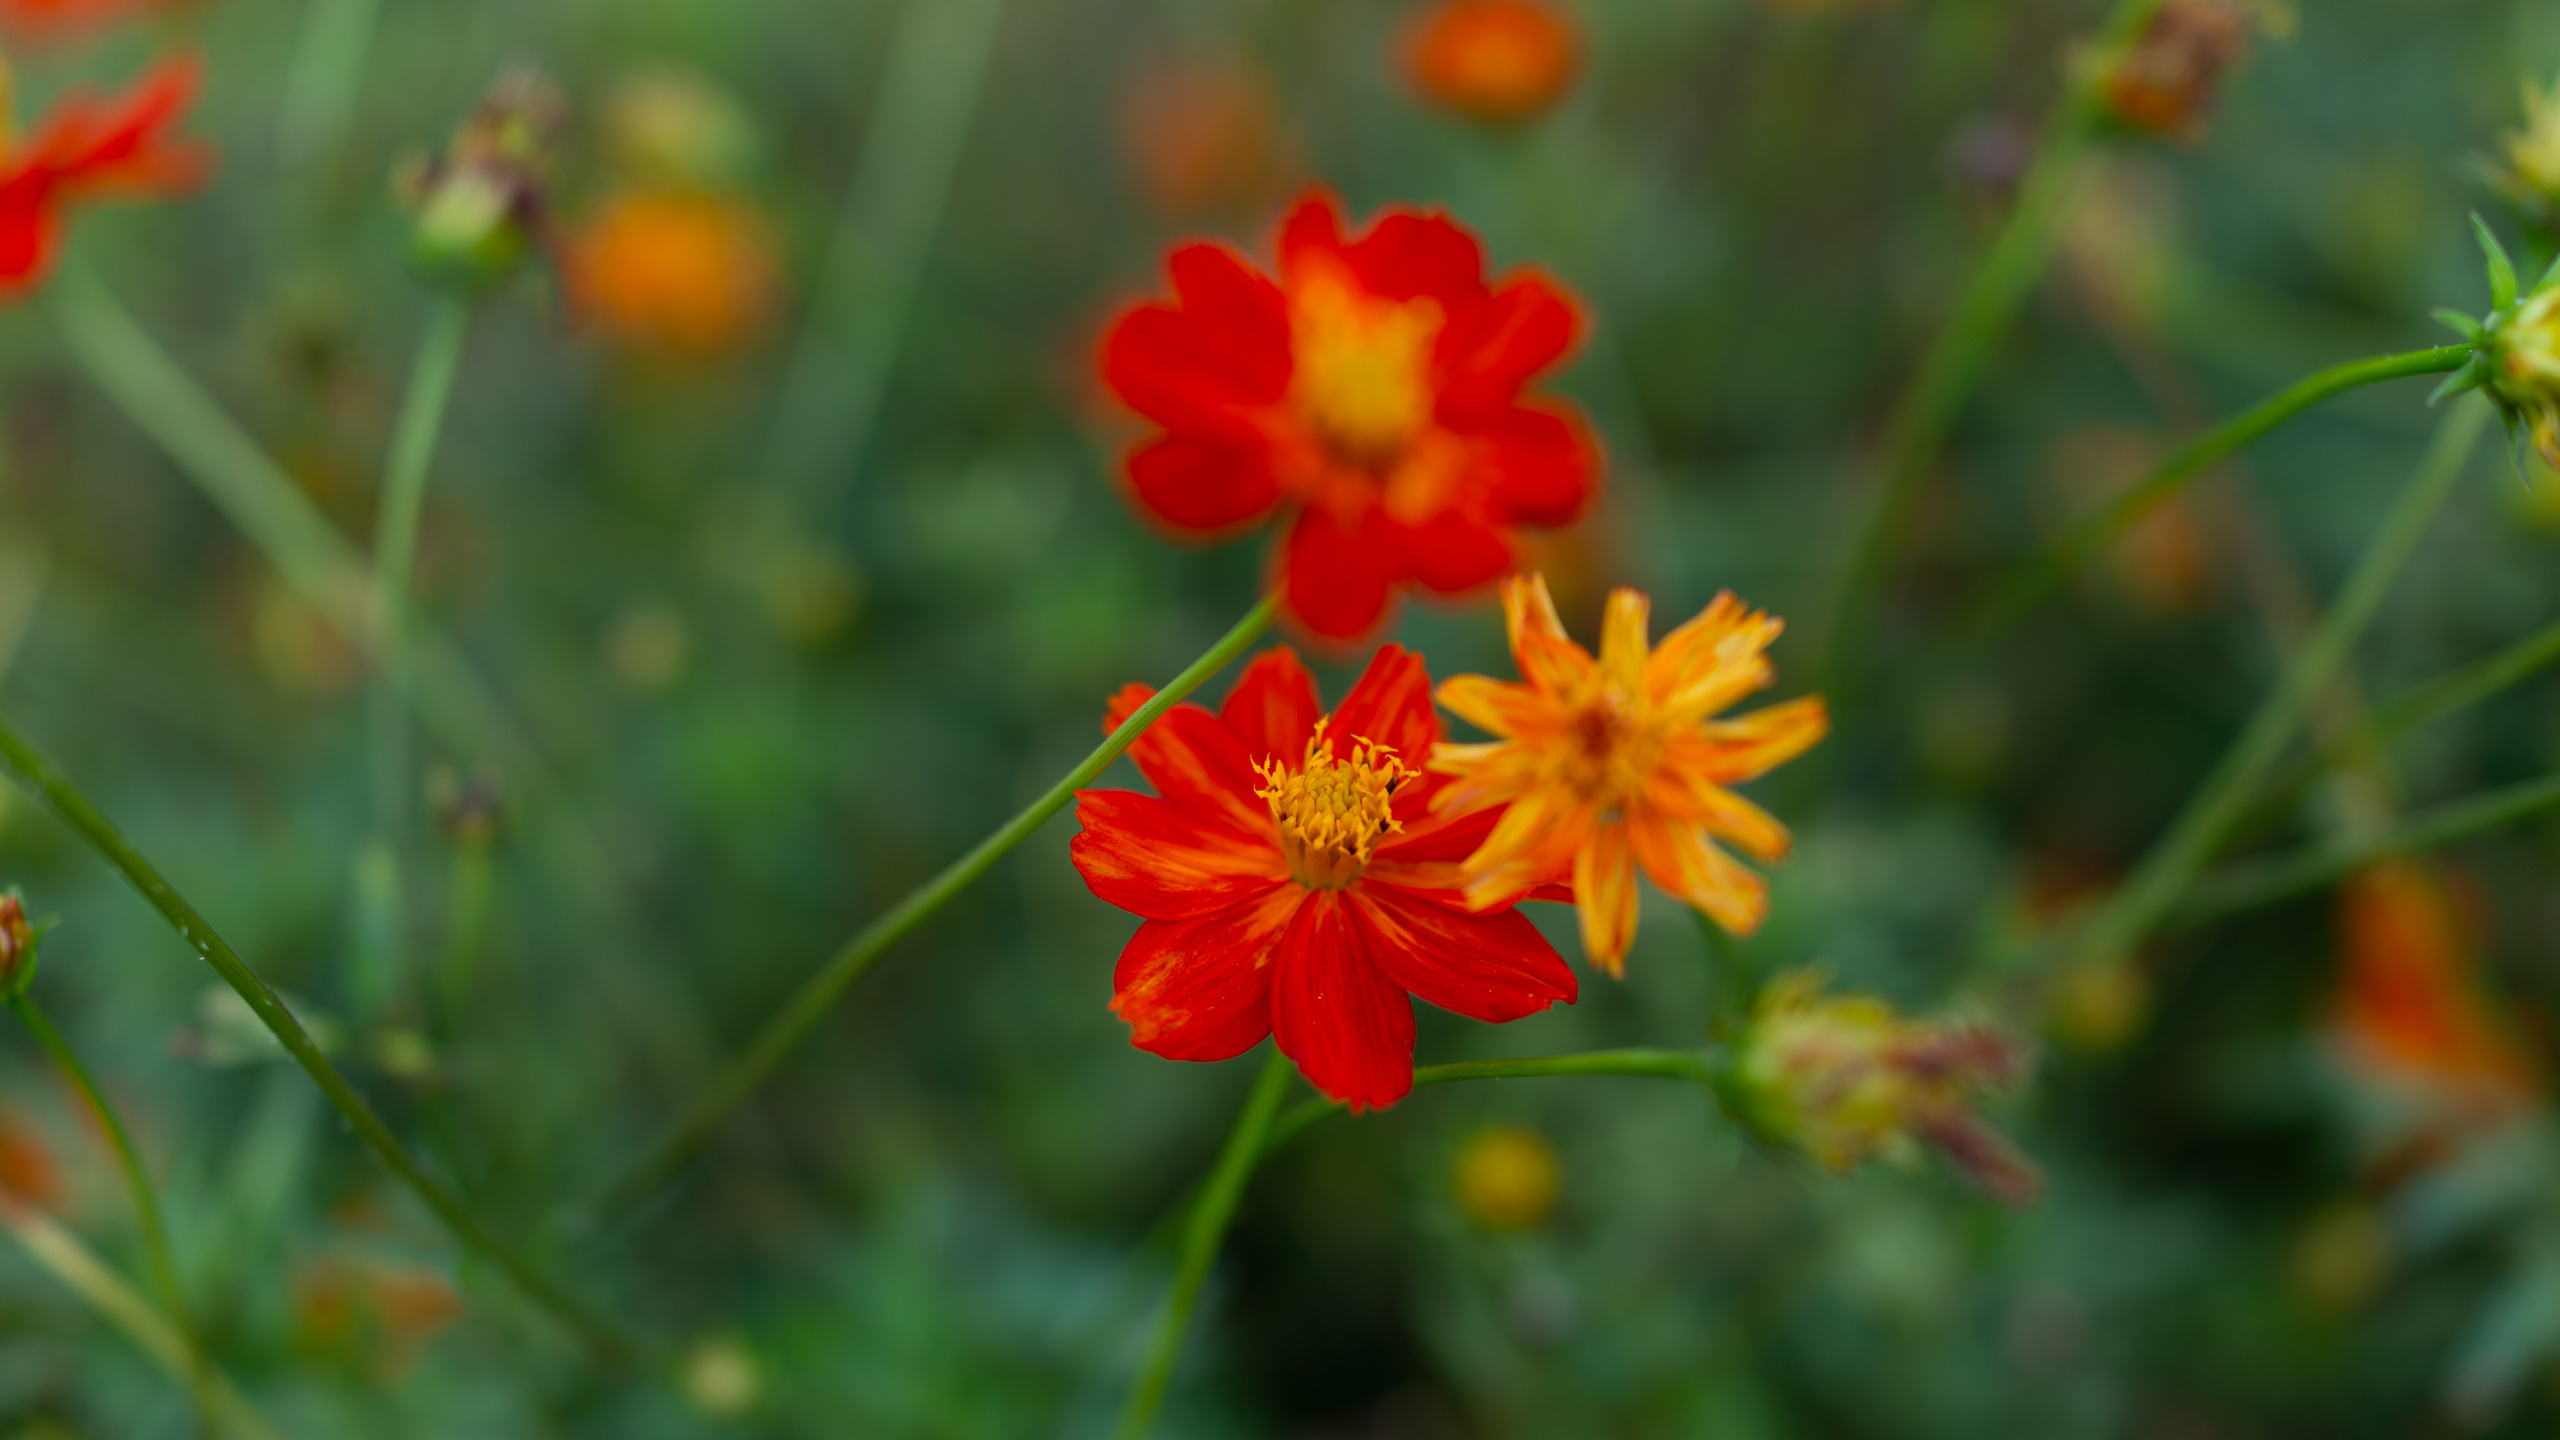 Red Flower in Tilt Shift Lens. Wallpaper in 2560x1440 Resolution